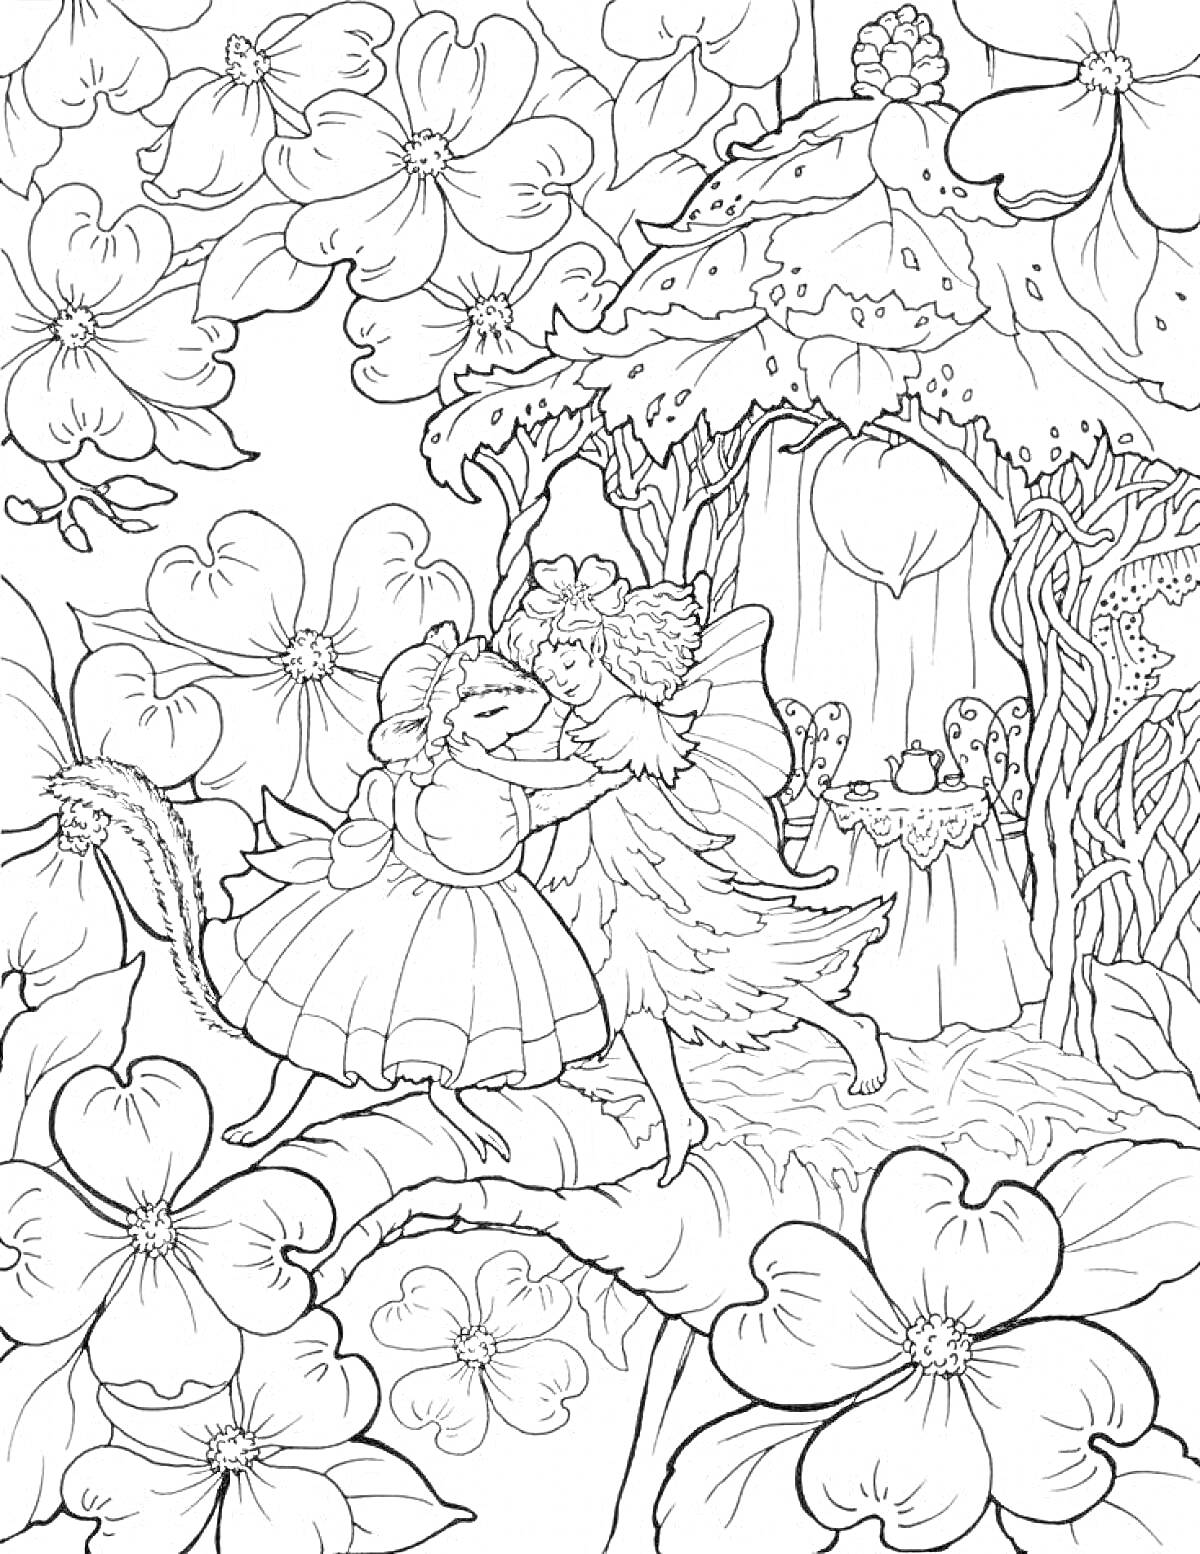 Раскраска Танцующие феи у сказочного домика на цветочной поляне